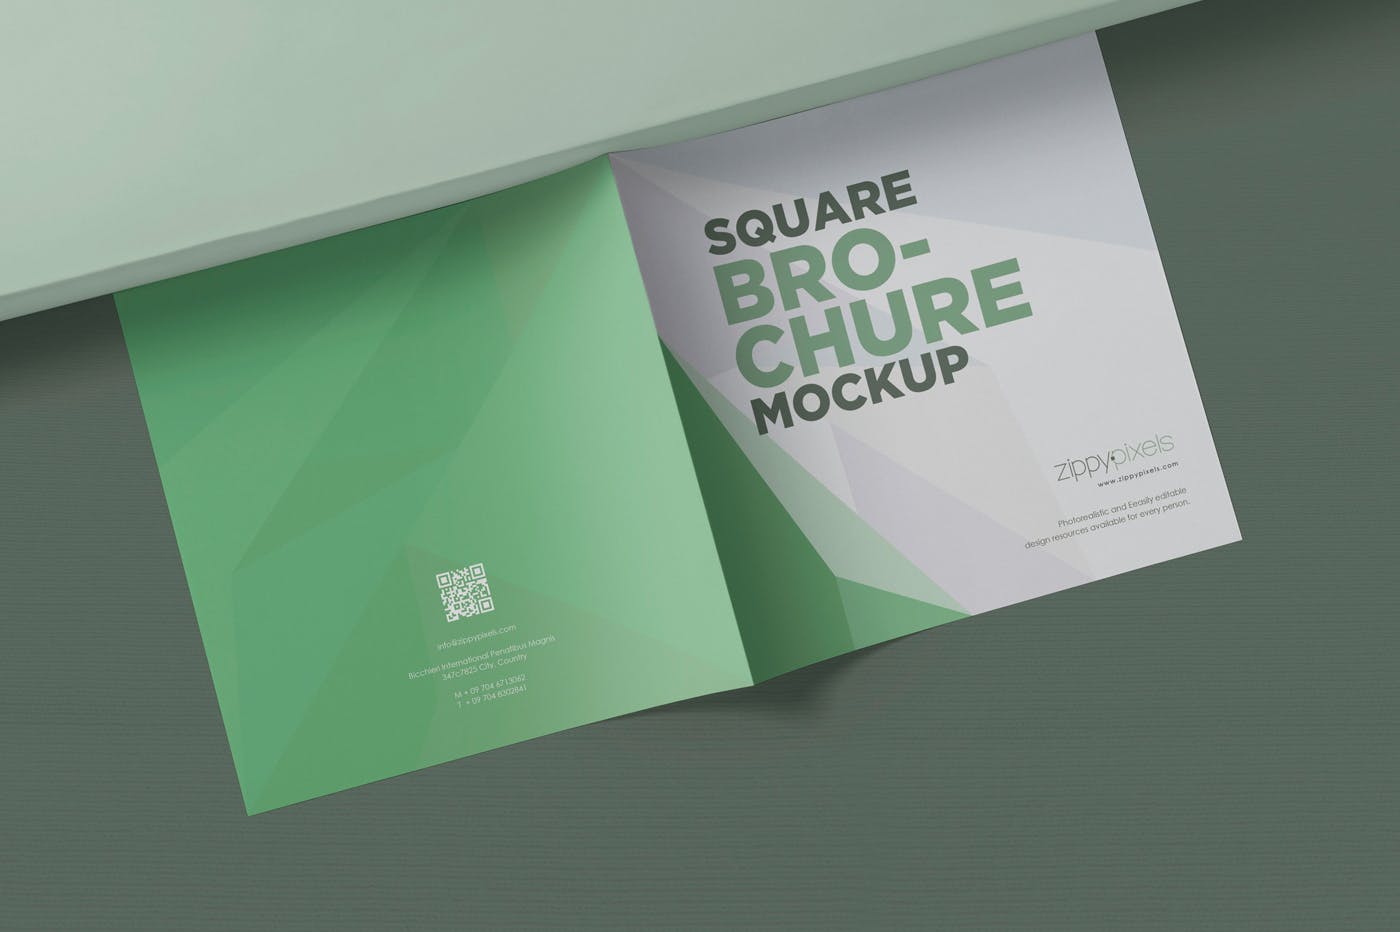 方形对折页宣传手册设计效果图样机蚂蚁素材精选 Square Bifold Brochure Mockups插图(1)